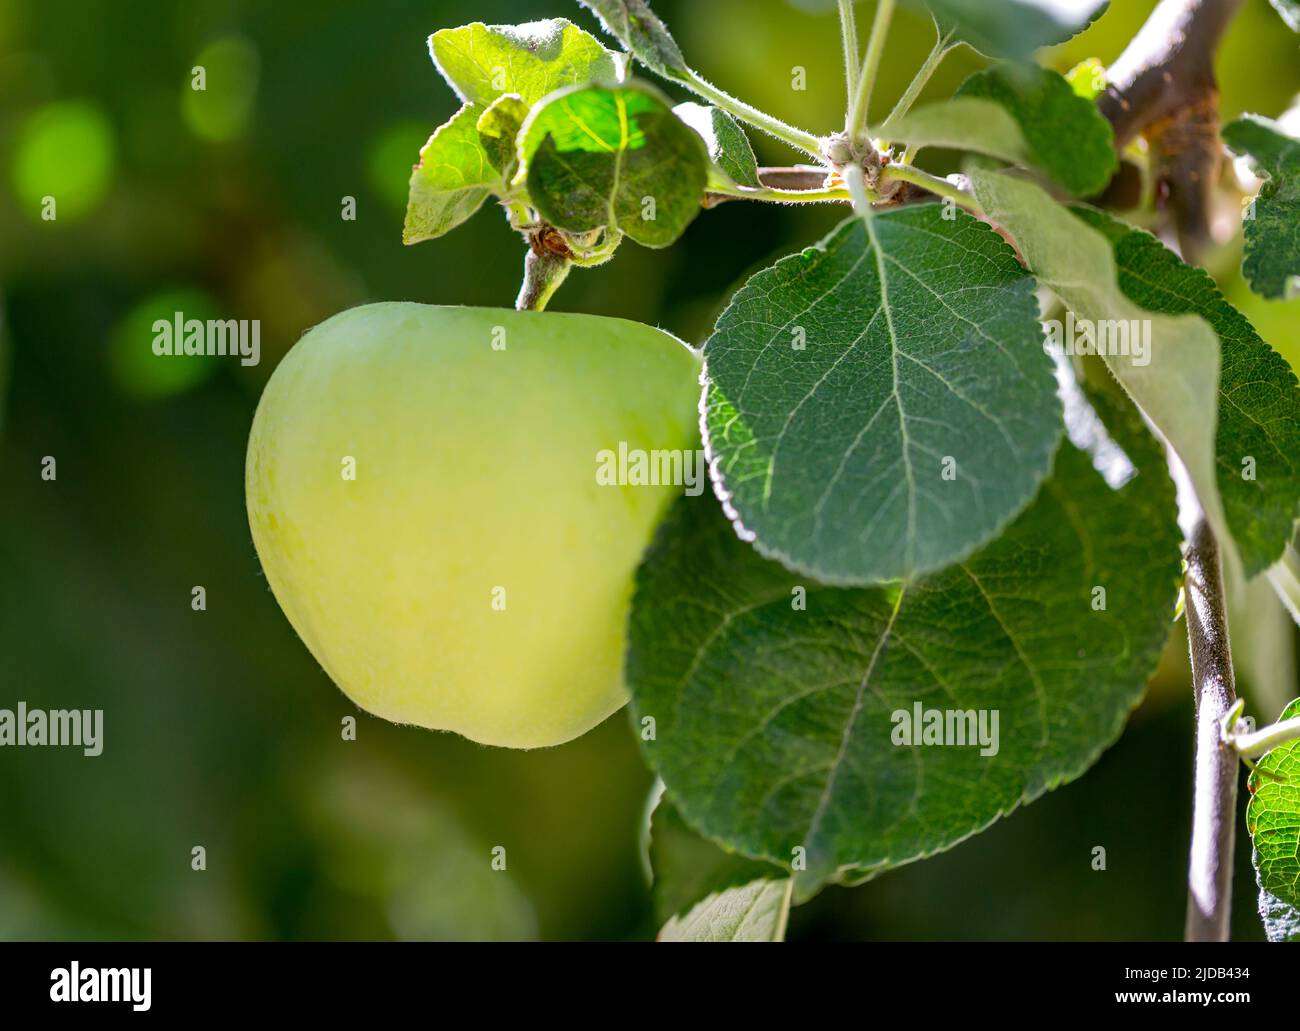 Gros plan d'une pomme verte (Malus) accrochée à un arbre; Madeira Park, Sunshine Coast, Colombie-Britannique, Canada Banque D'Images